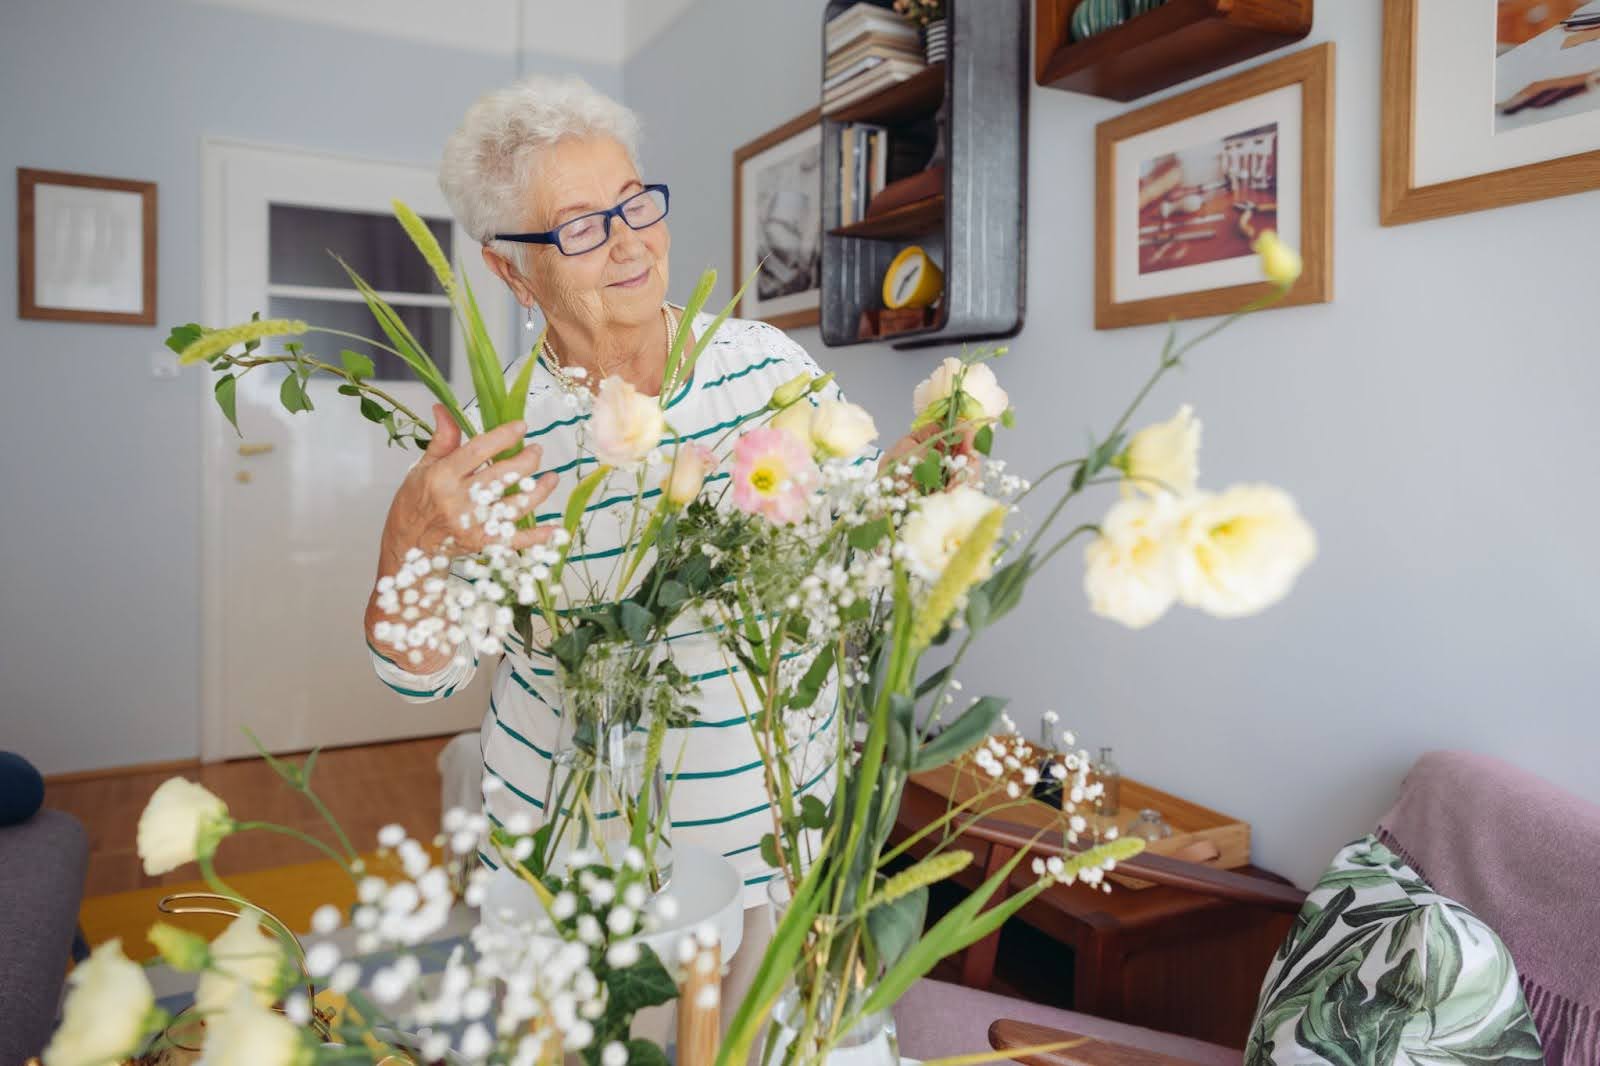 Senior lady putting together a floral arrangement